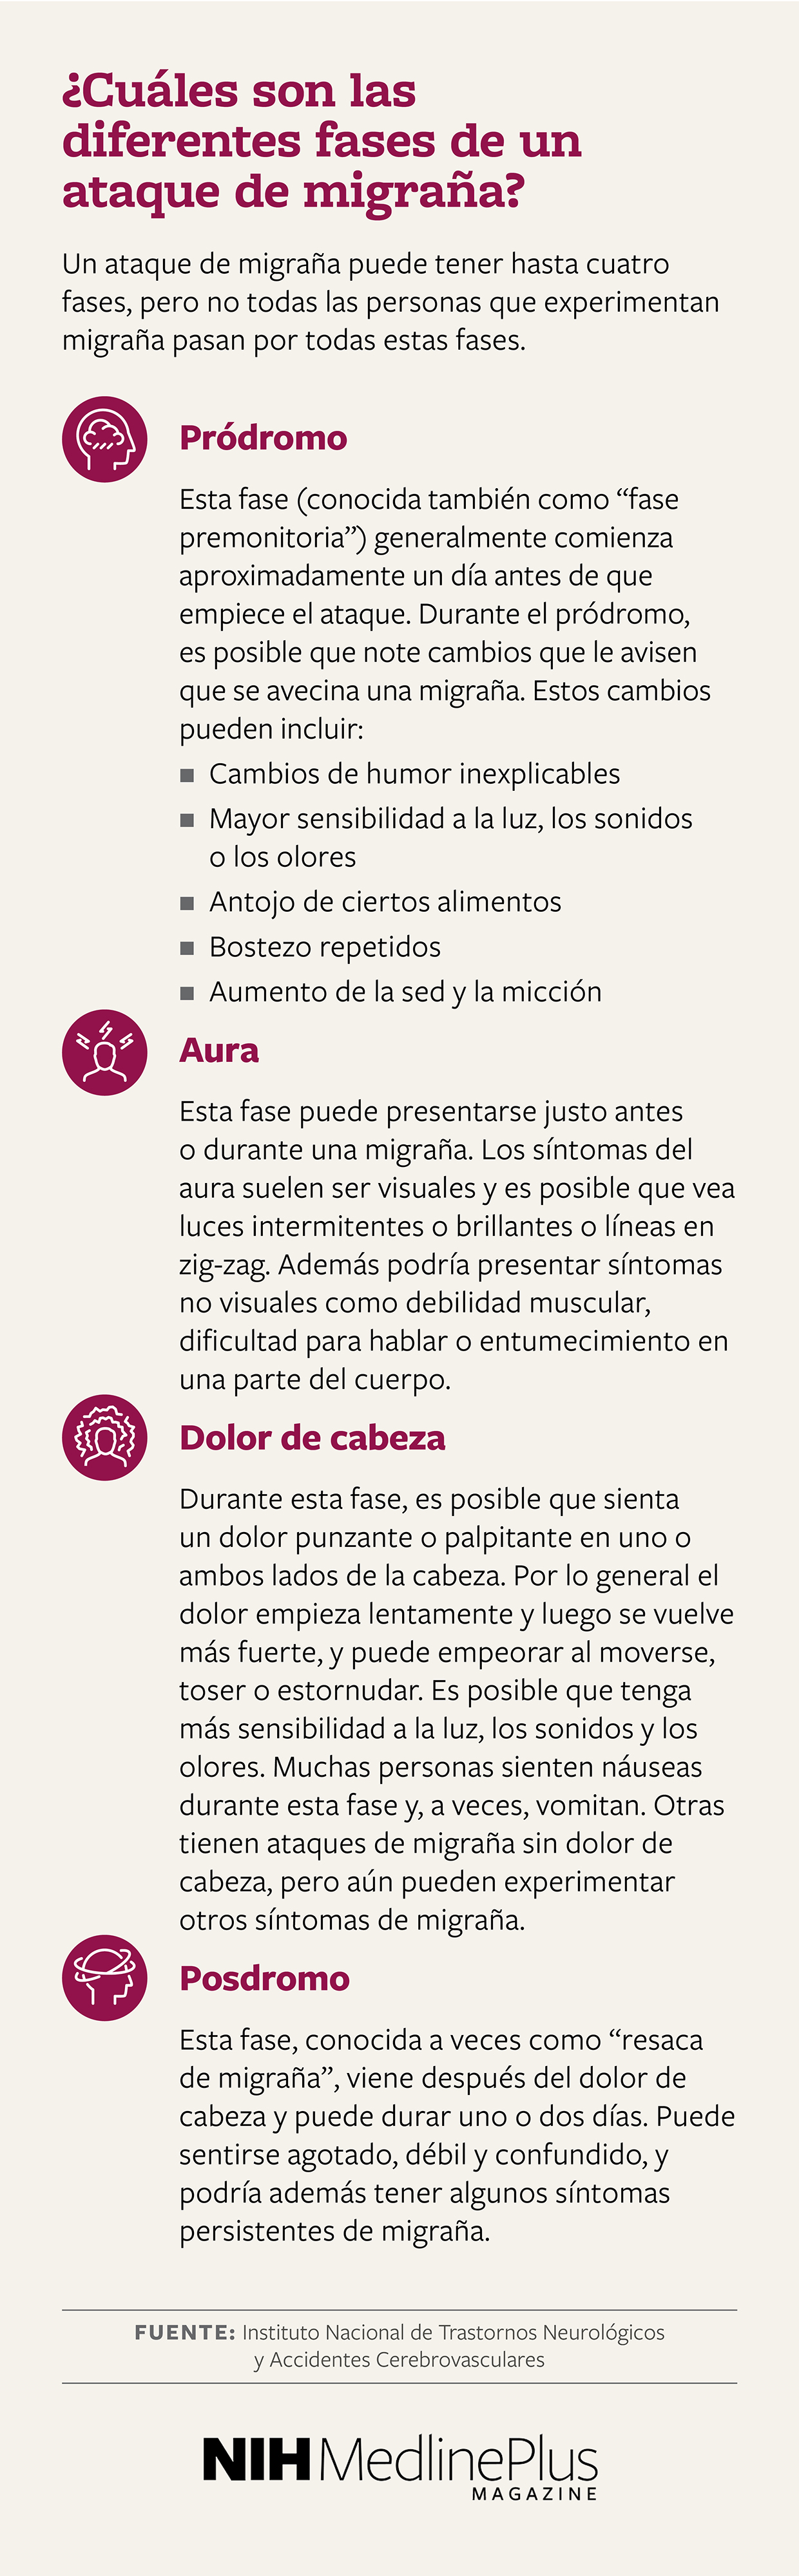 ¿Cuáles son las diferentes fases de un ataque de migraña?     
Un ataque de migraña puede tener hasta cuatro fases, pero no todas las personas que experimentan migraña pasan por todas estas fases.
 
 
    